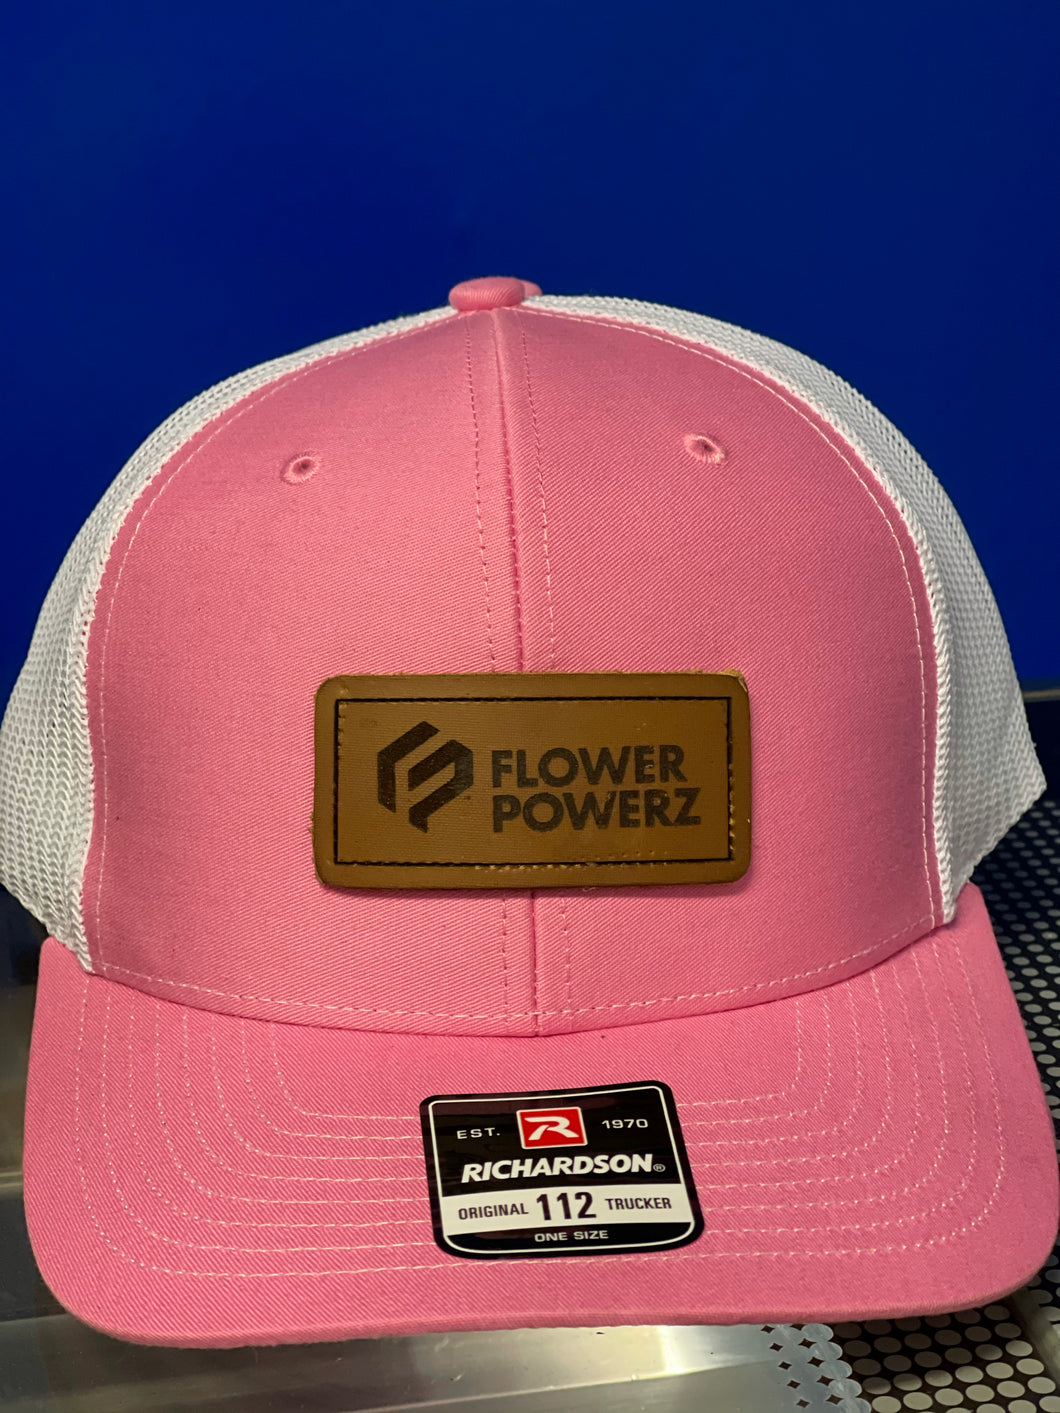 Flowerpowerz Hats